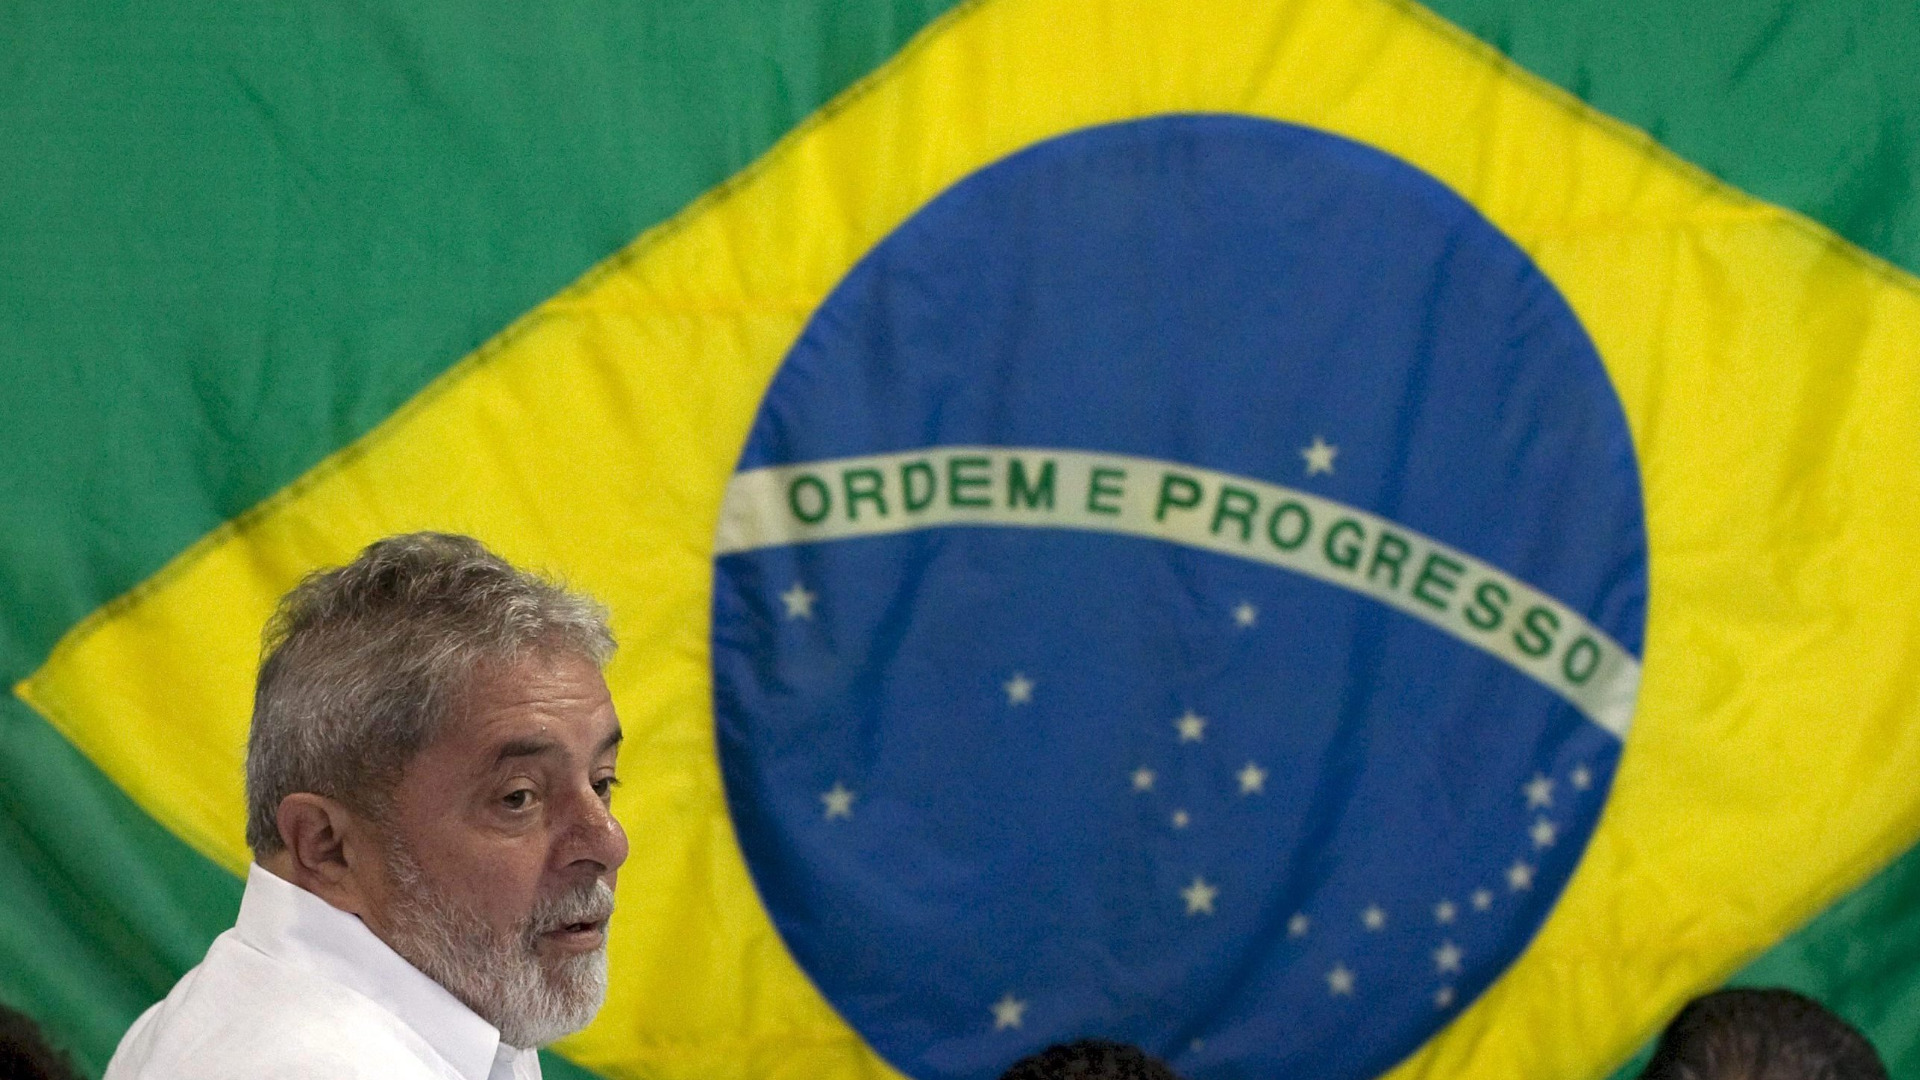 Забрана за носене на оръжие в столицата на Бразилия преди предстоящото встъпване в длъжност на новия президент Лула да Силва